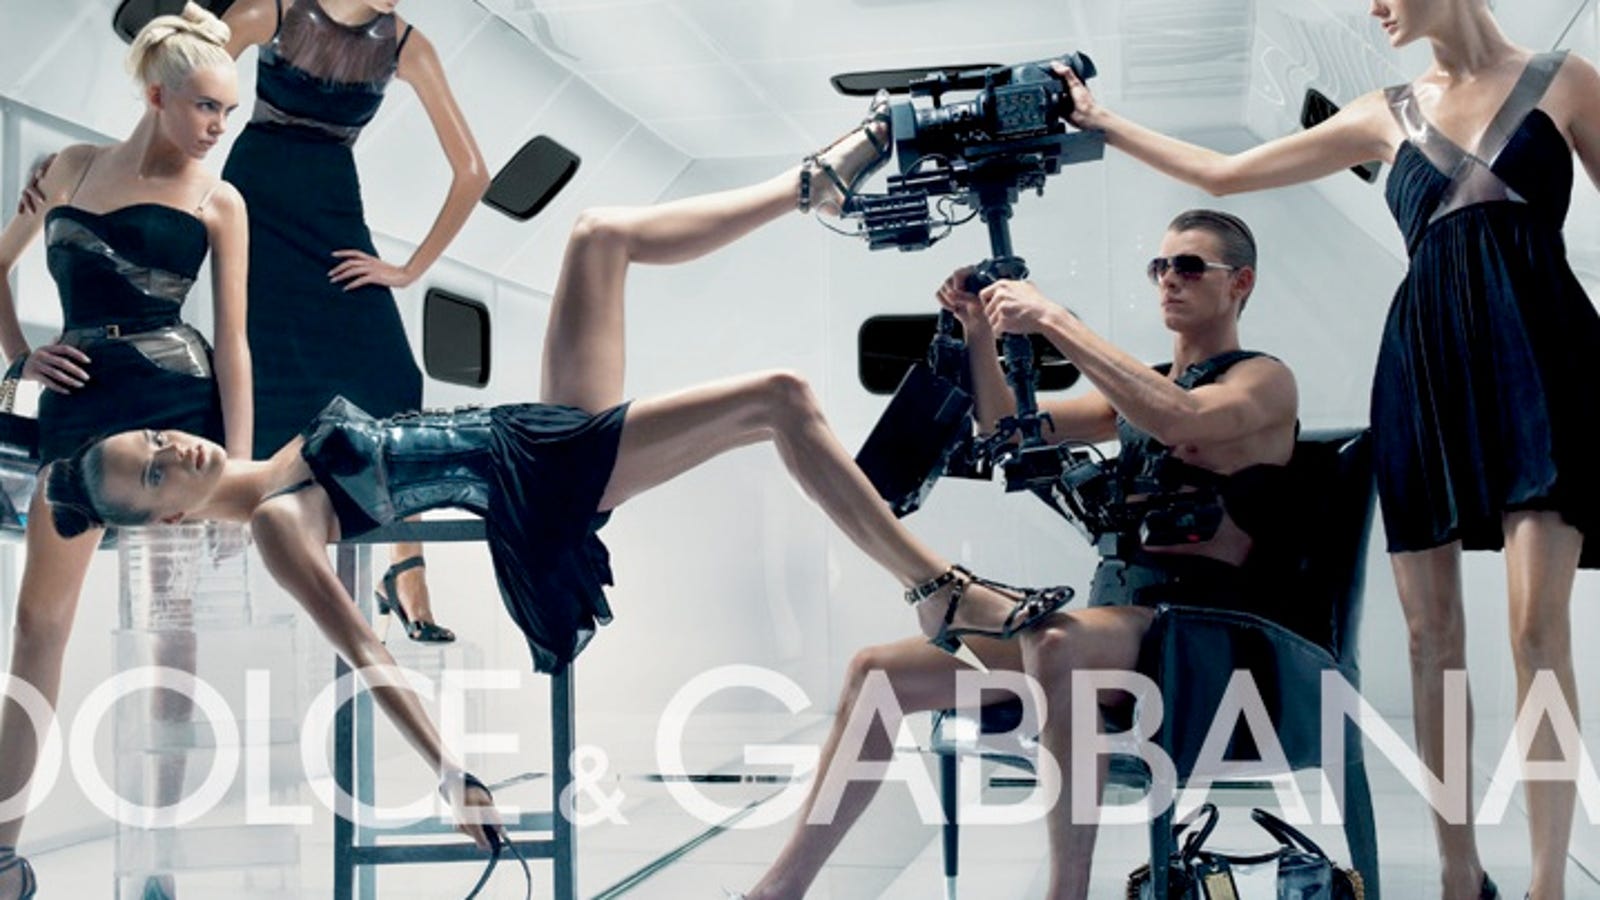 Dolce & Gabbana Cancel Gang-Rape Print Ad